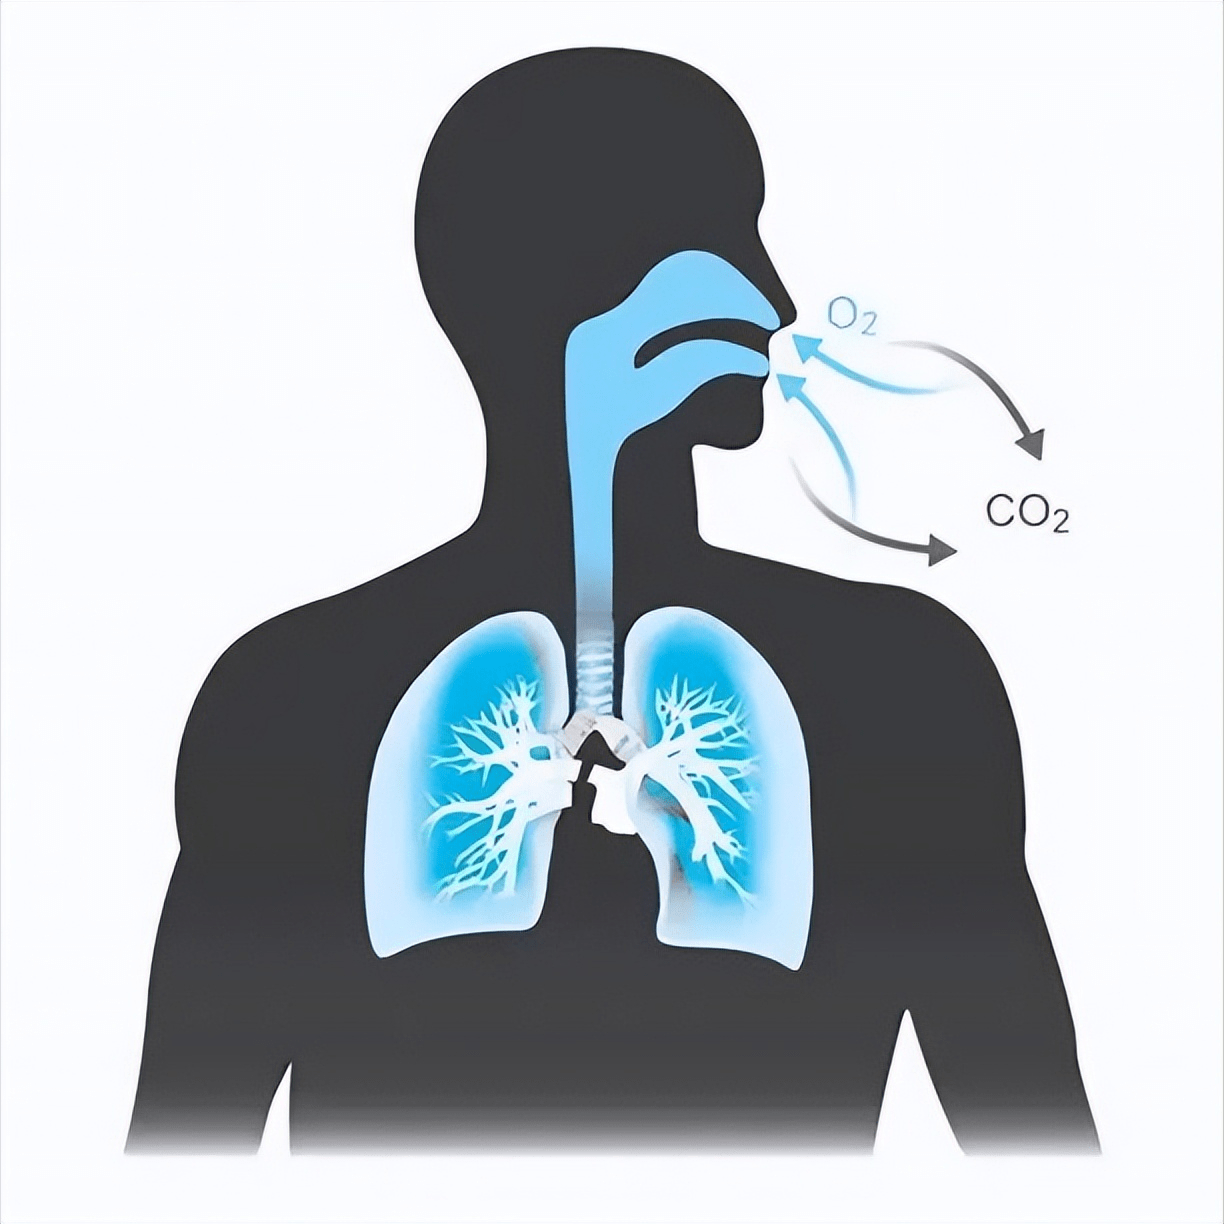 wimhof呼吸法憋气10分钟缓解压力改善睡眠提高自控力